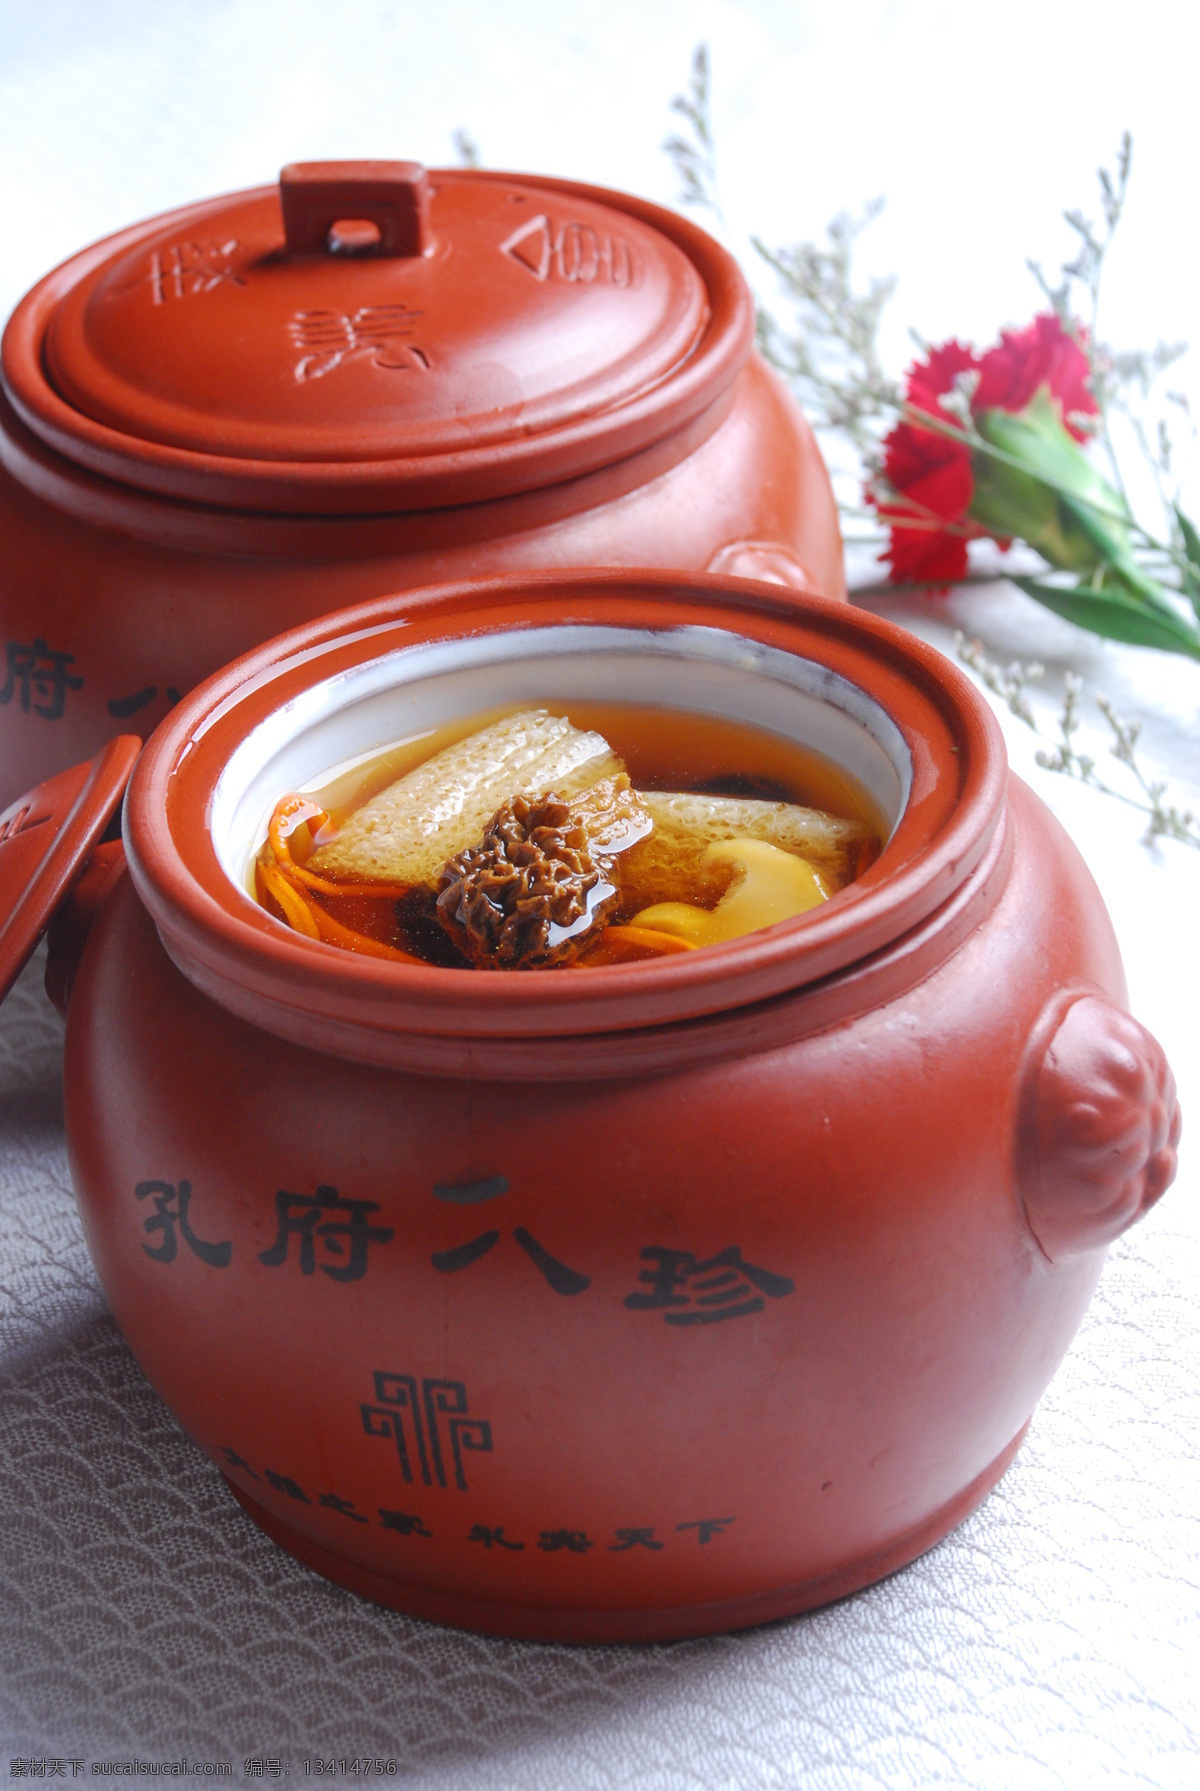 八仙闹罗汉 中餐 瓦罐 摆盘 菜单 传统美食 餐饮美食